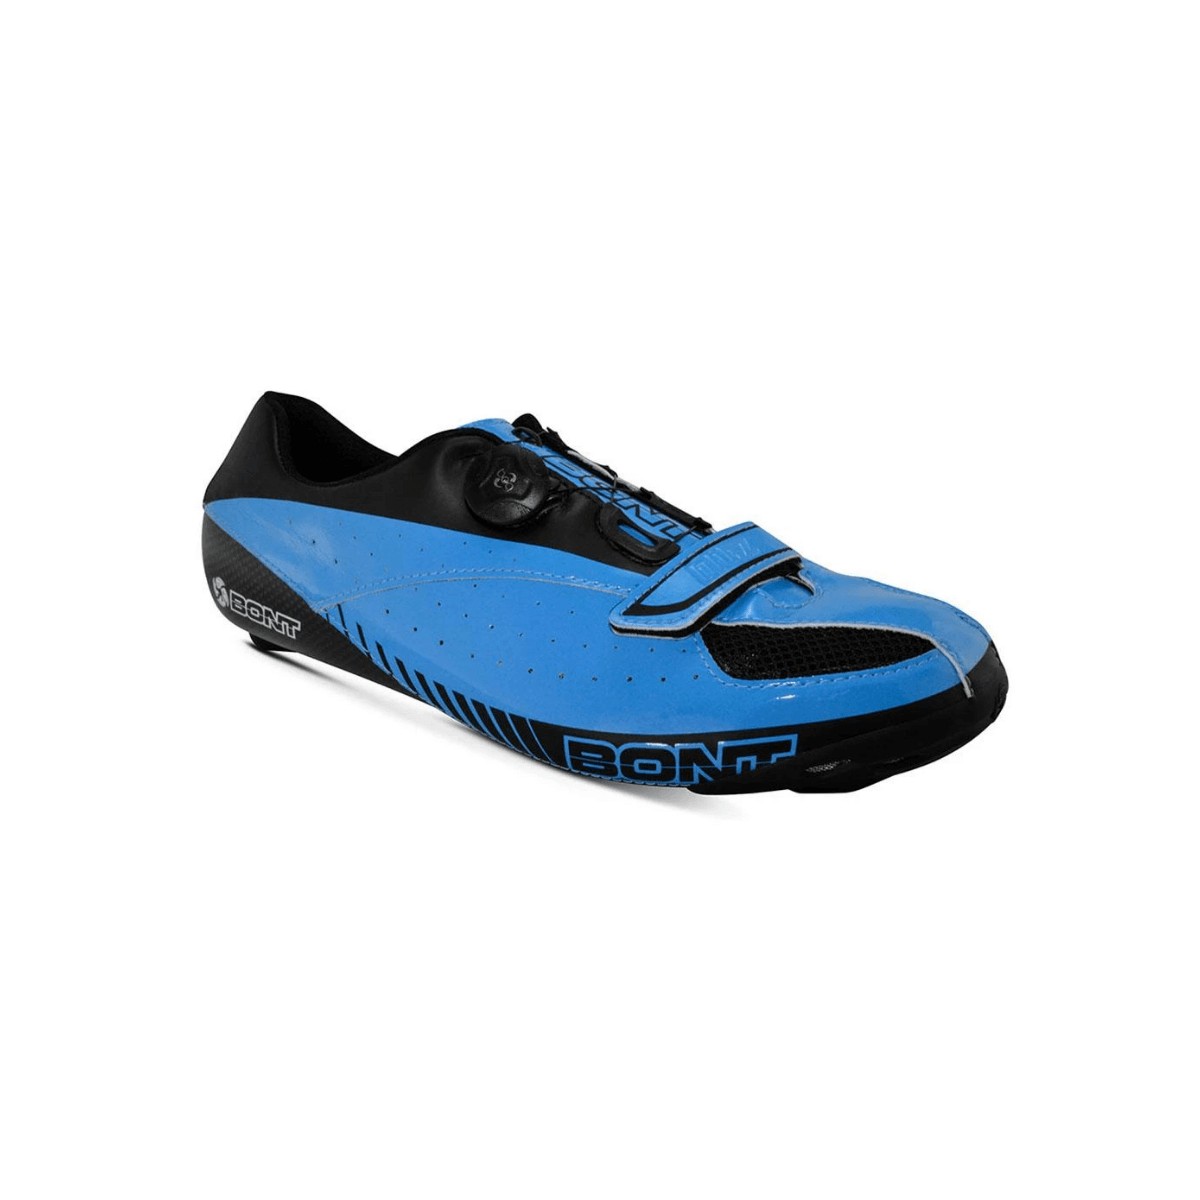 Bont Blitz Sneakers Blue Black, Size 40,5 - EUR